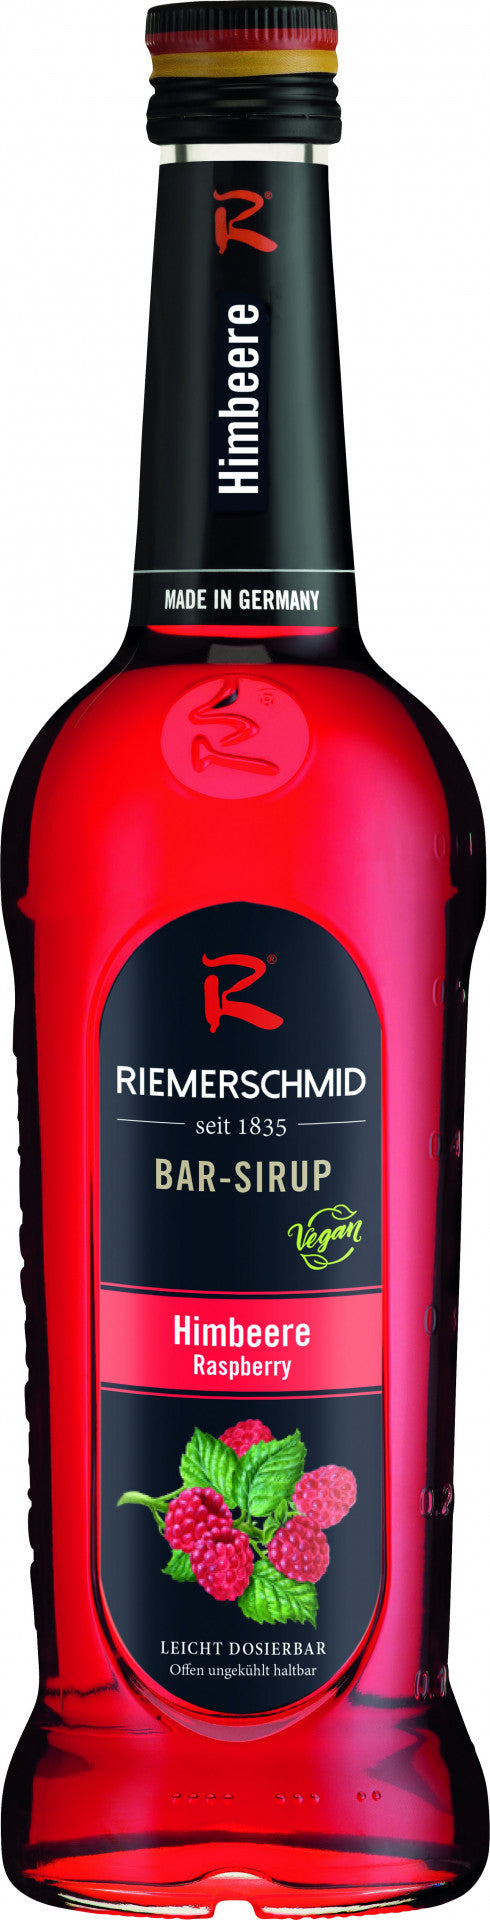 Riemerschmid Bar-Sirup Himbeer Geschmack 0,7L